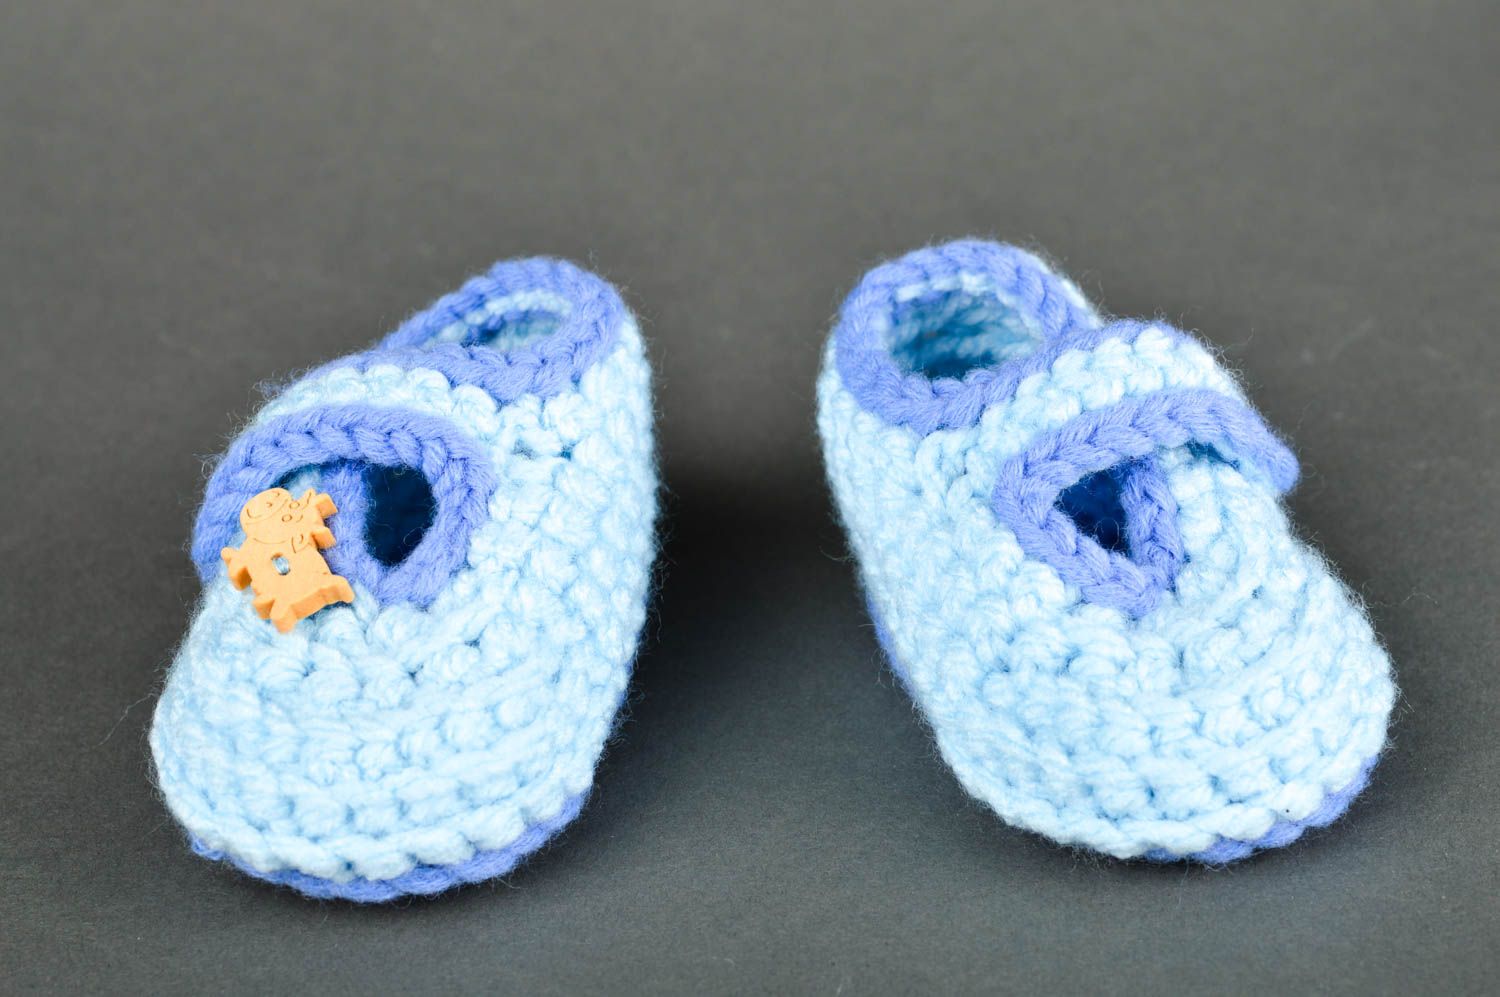 Пинетки крючком хэнд мэйд пинетки для новорожденных голубые вязаные пинетки фото 1